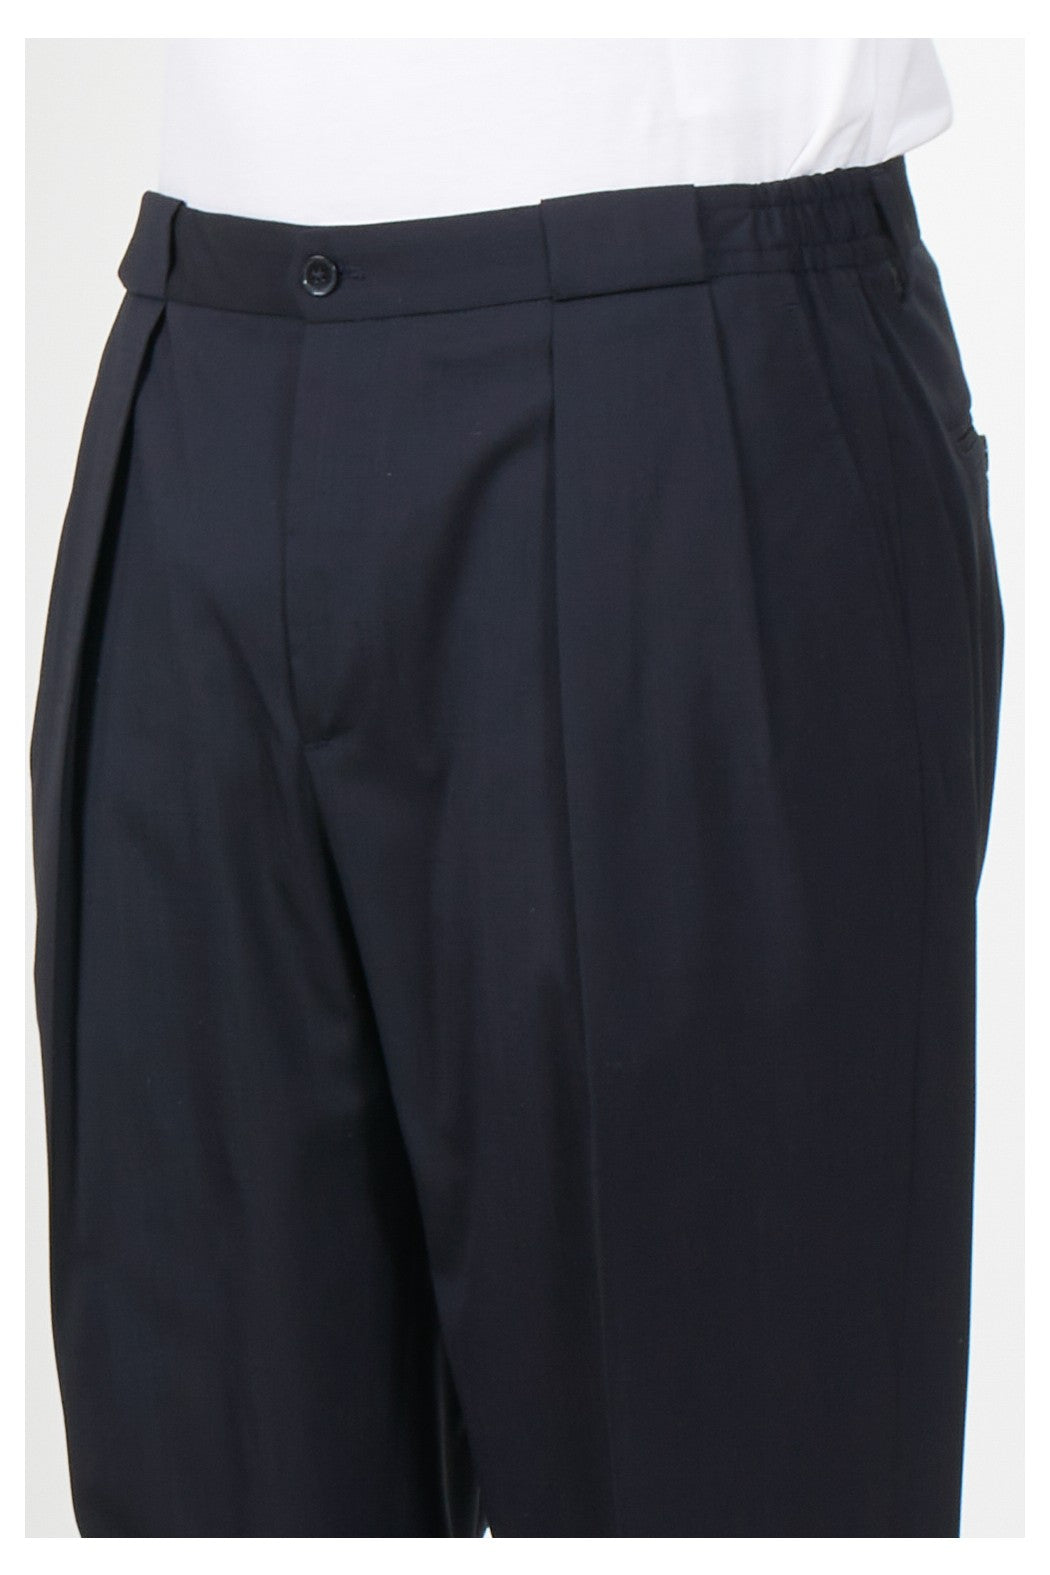 Pantalone Modello Portobello / Blu - Ideal Moda